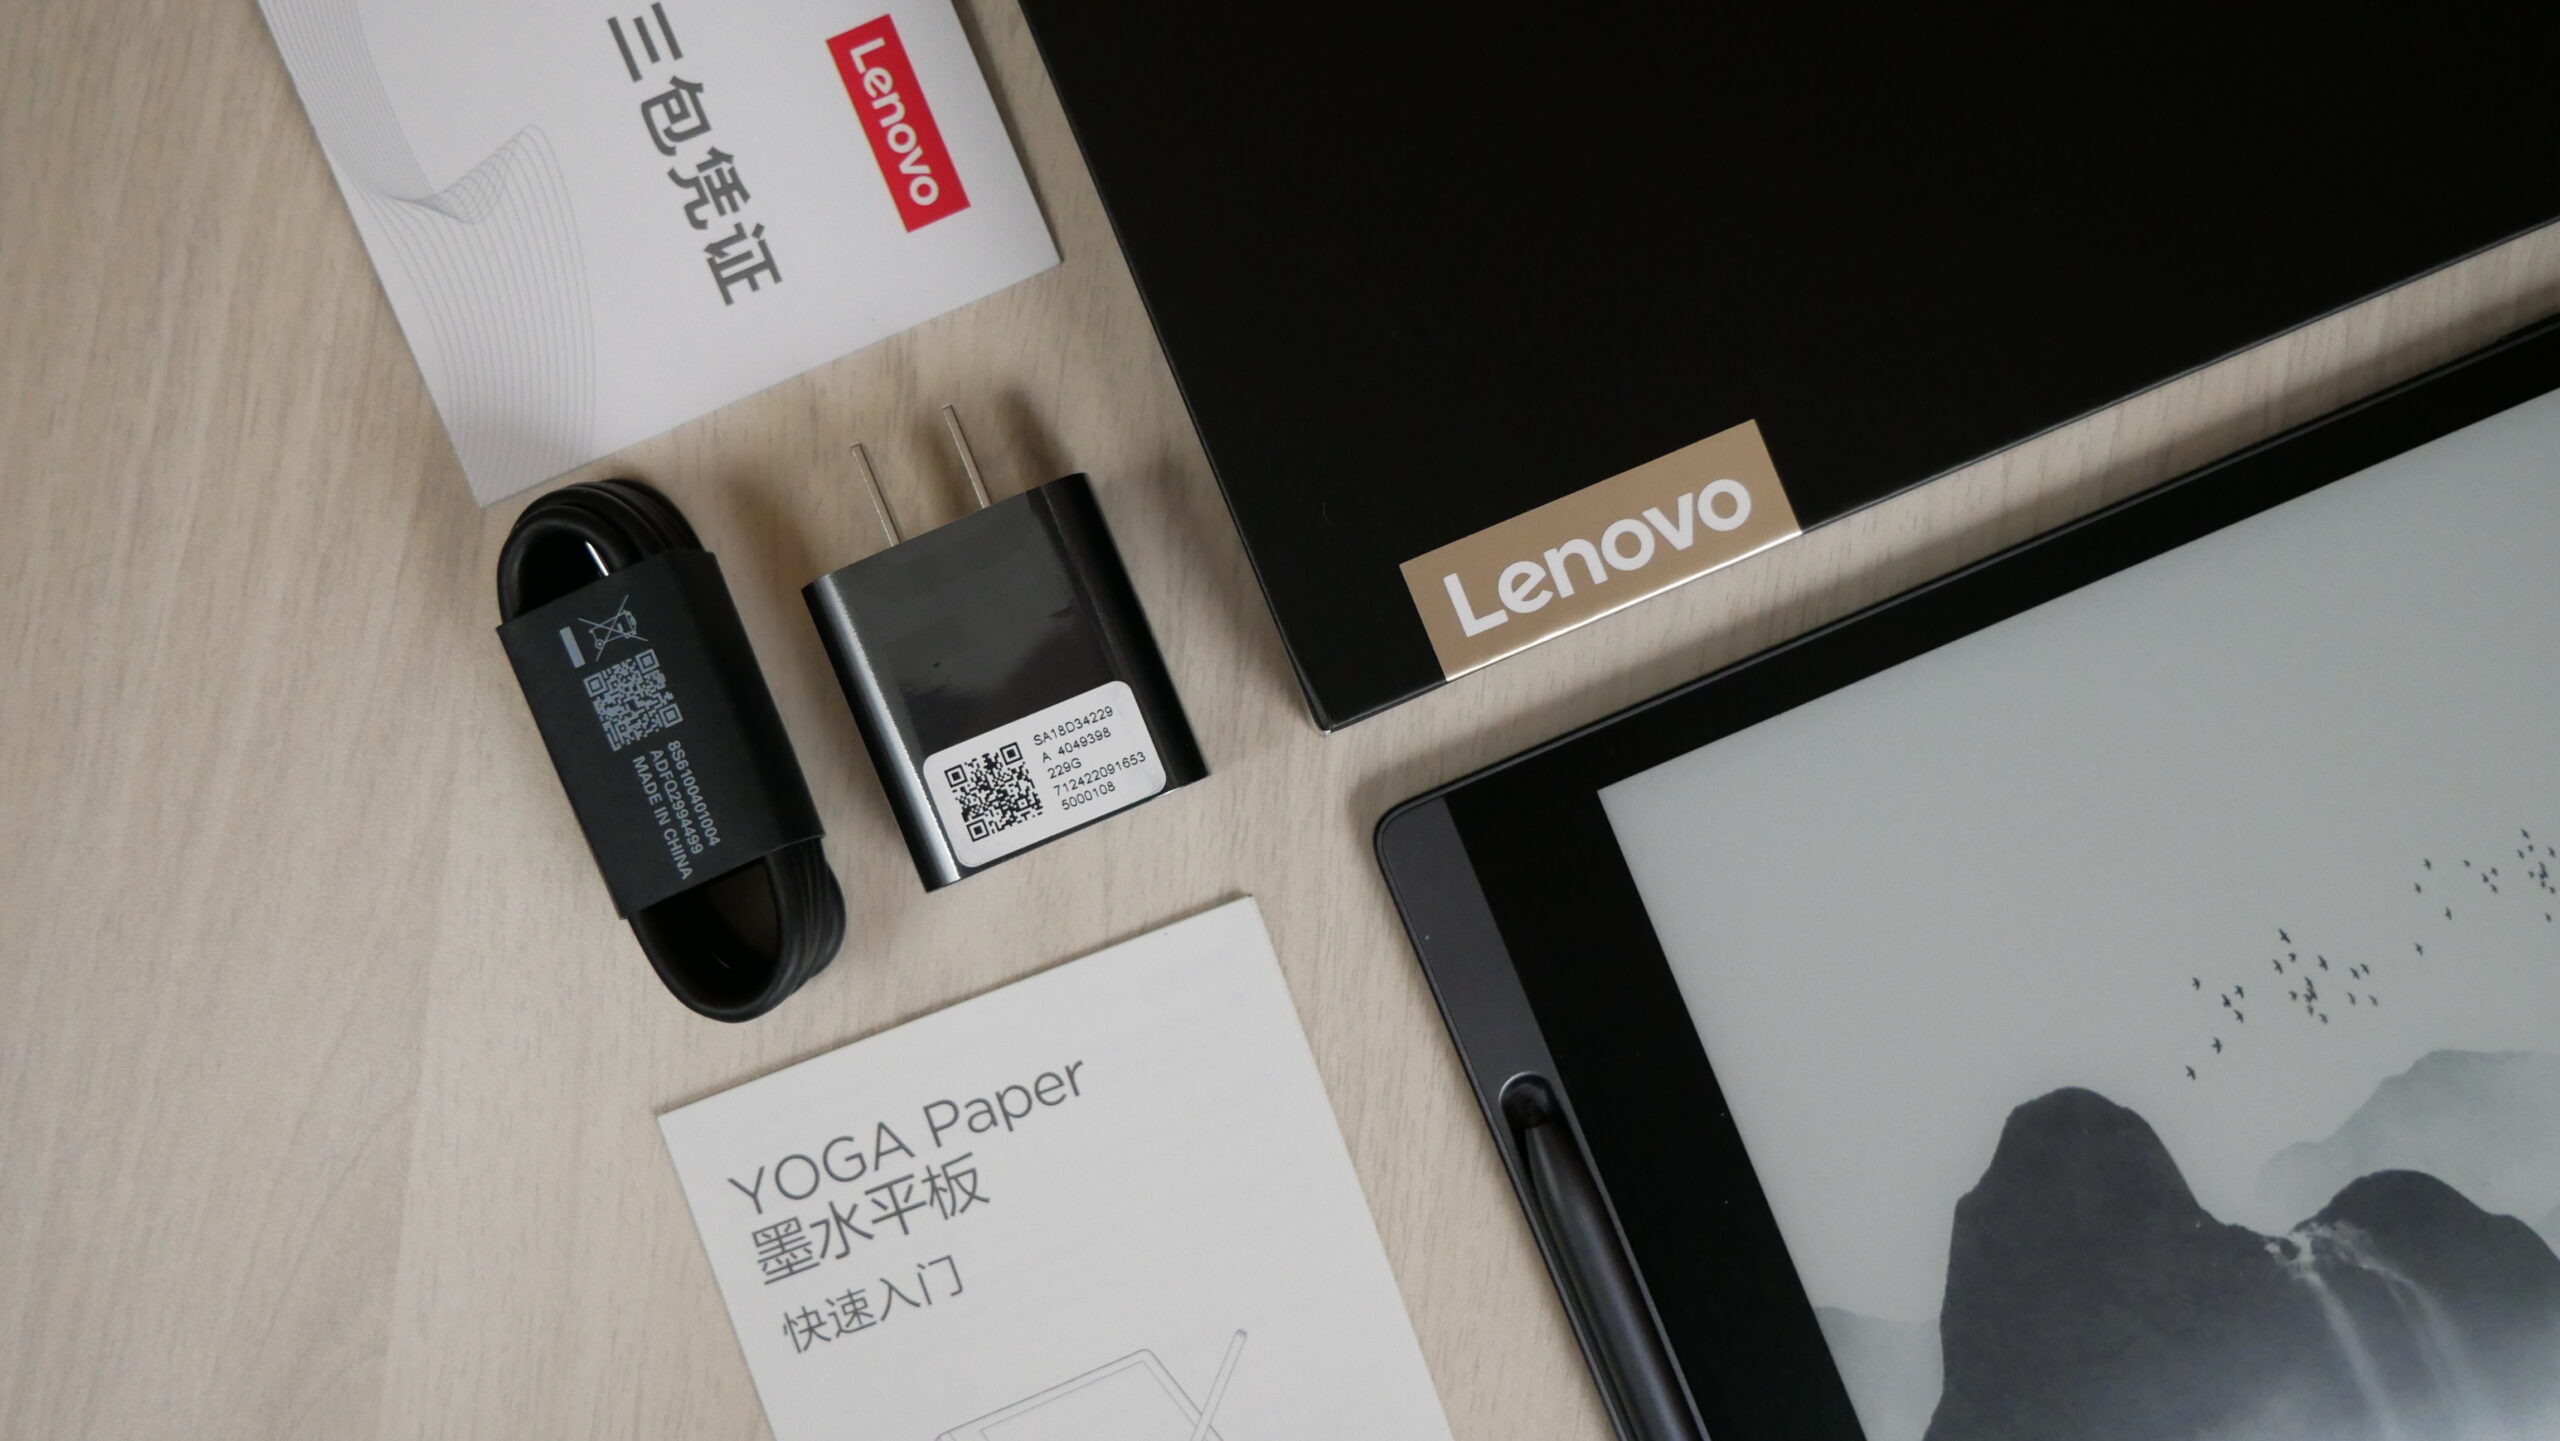 Lenovo Smart Paper -  External Reviews